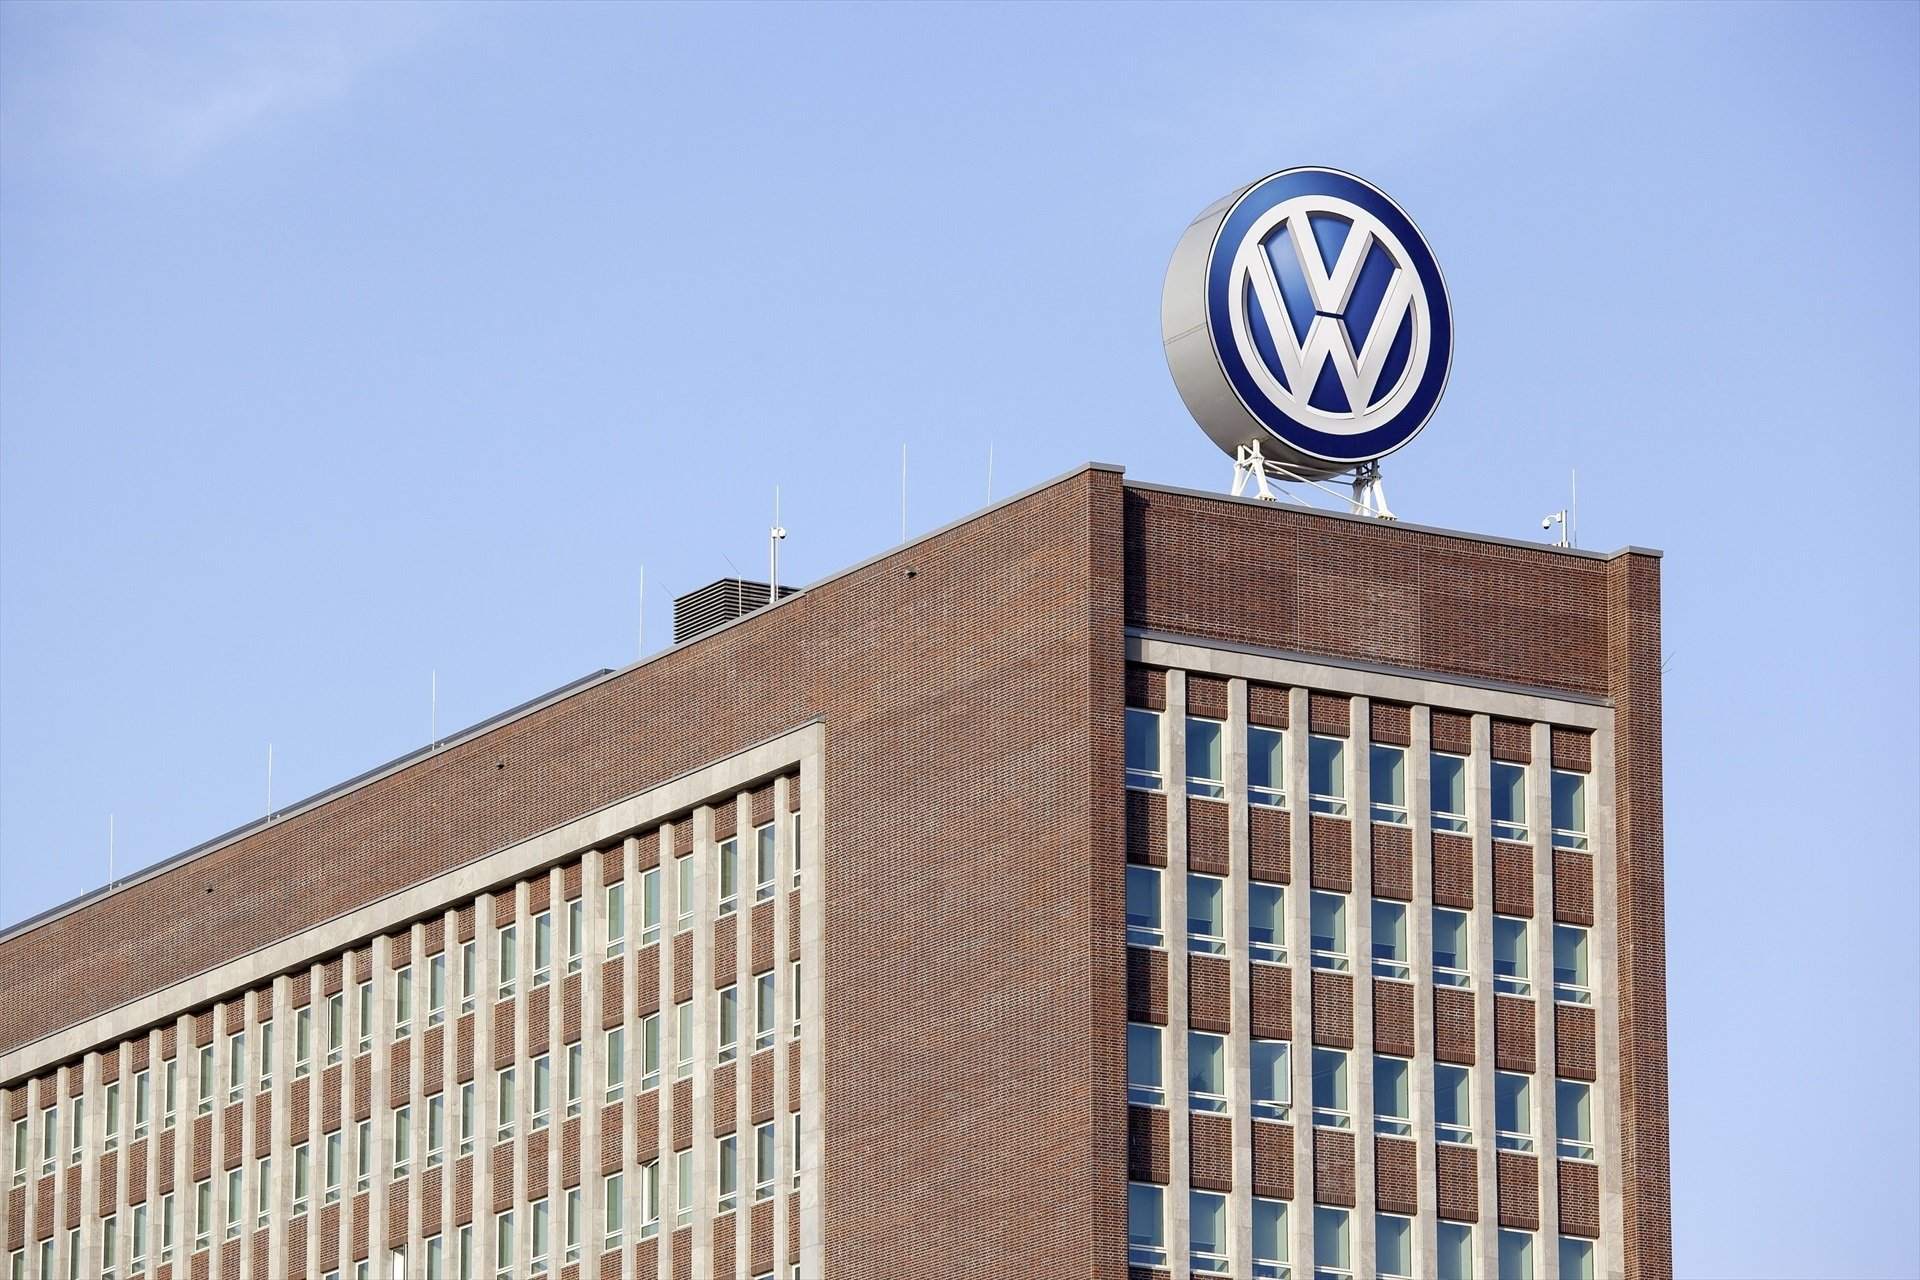 Adeu confirmat, Volkswagen cancel·la la producció